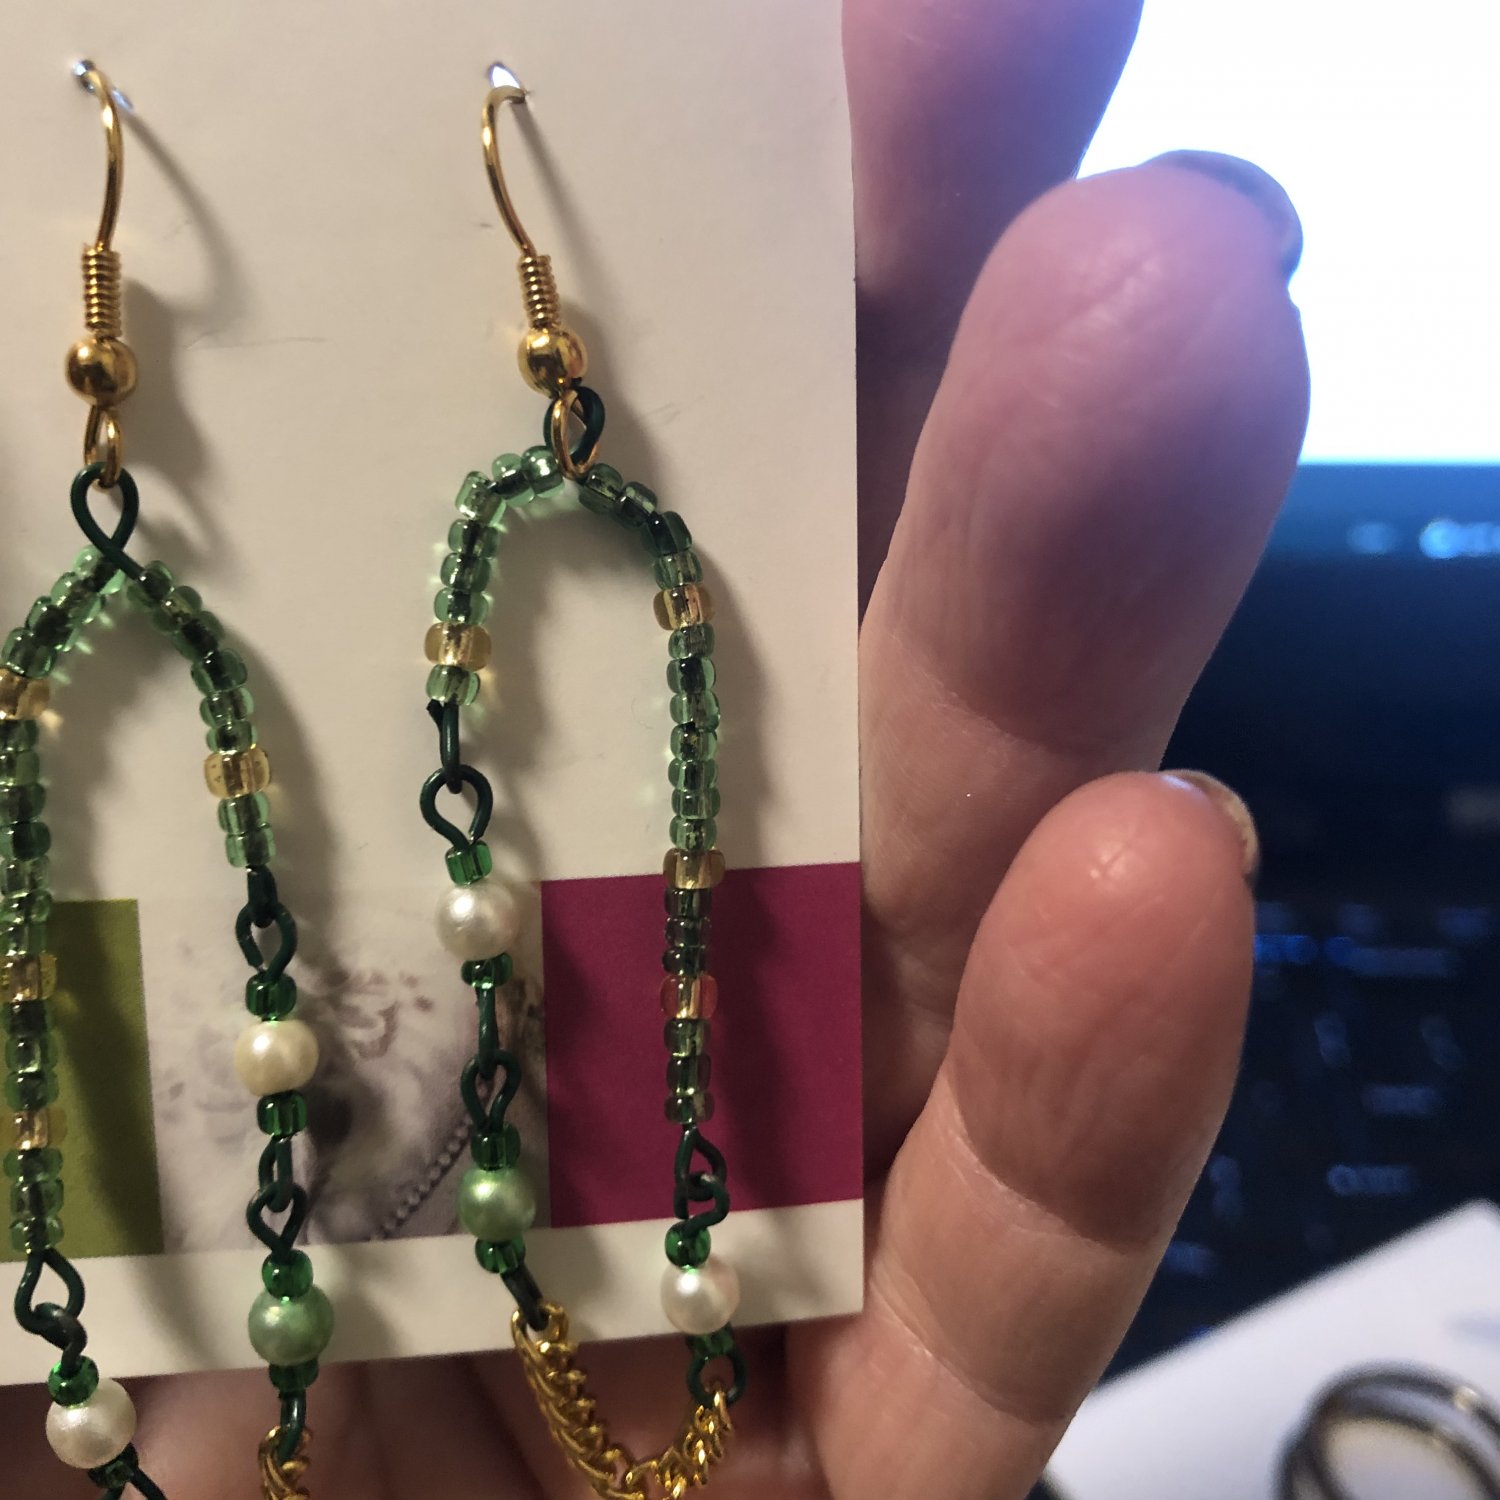 Linear beaded handmade green earrings, #3619E, gift ideas, Lucine designs